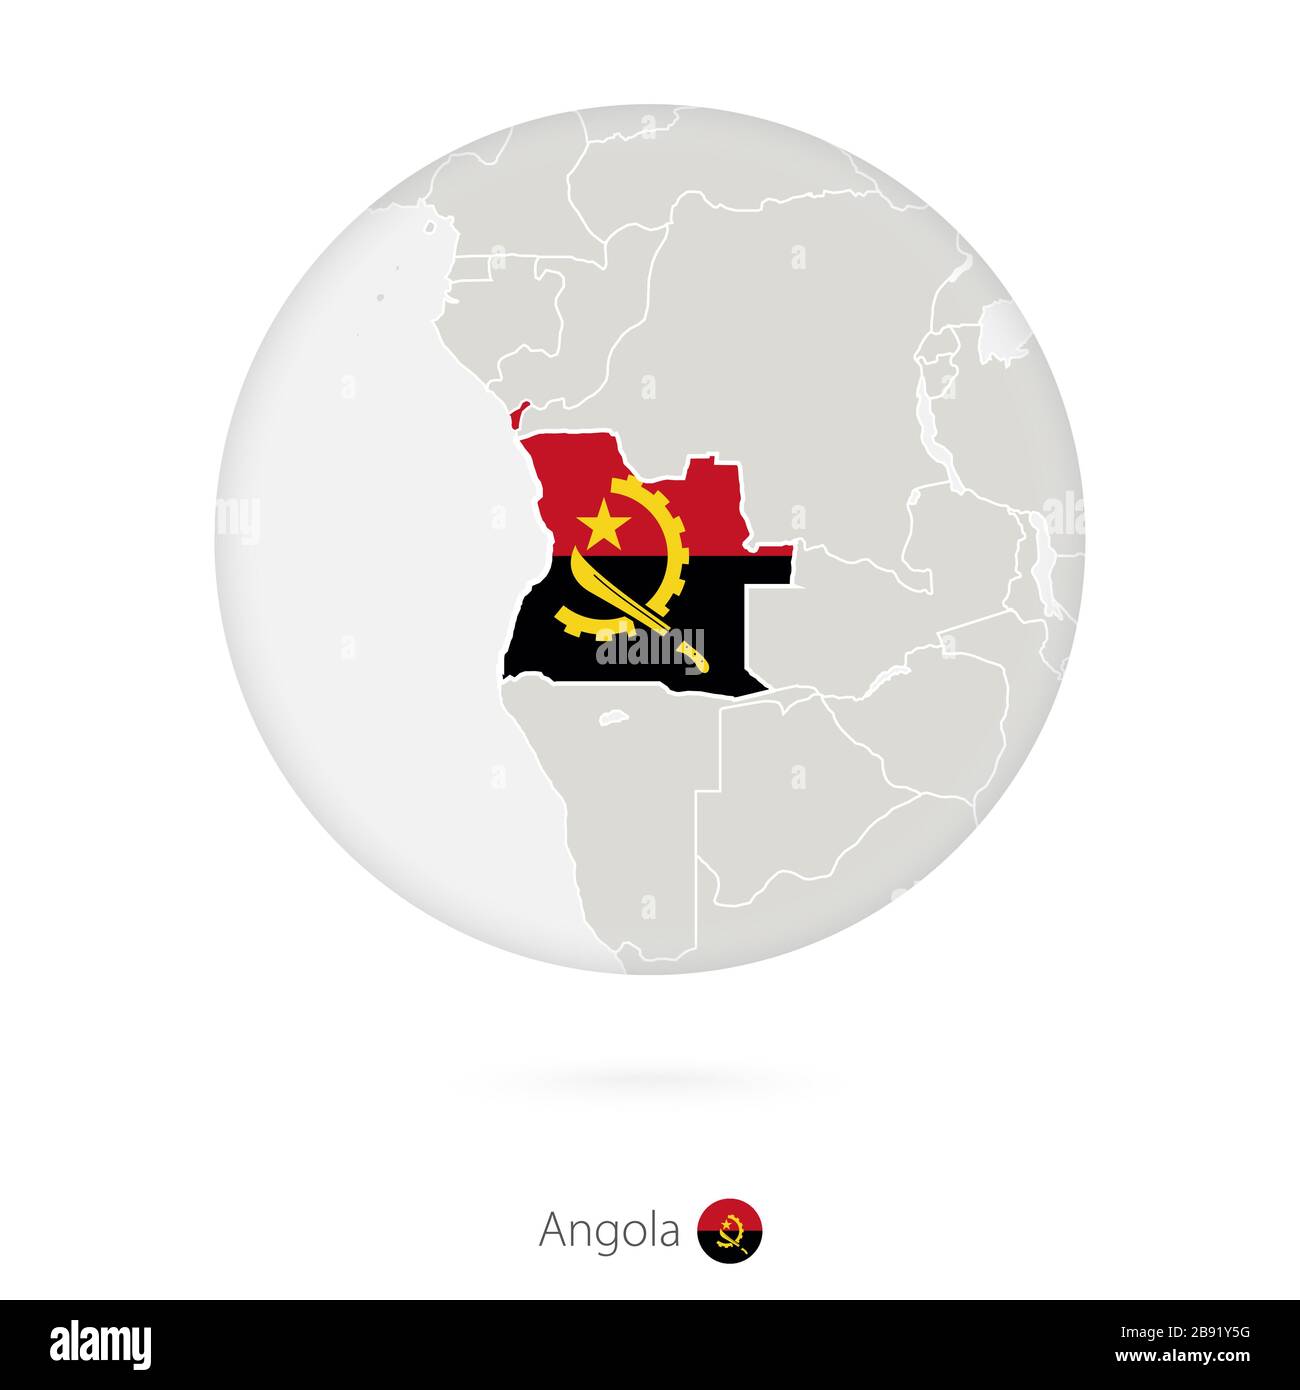 Mapa De Angola Y Bandera Nacional En Círculo Contorno Del Mapa De Angola Con Bandera 2097